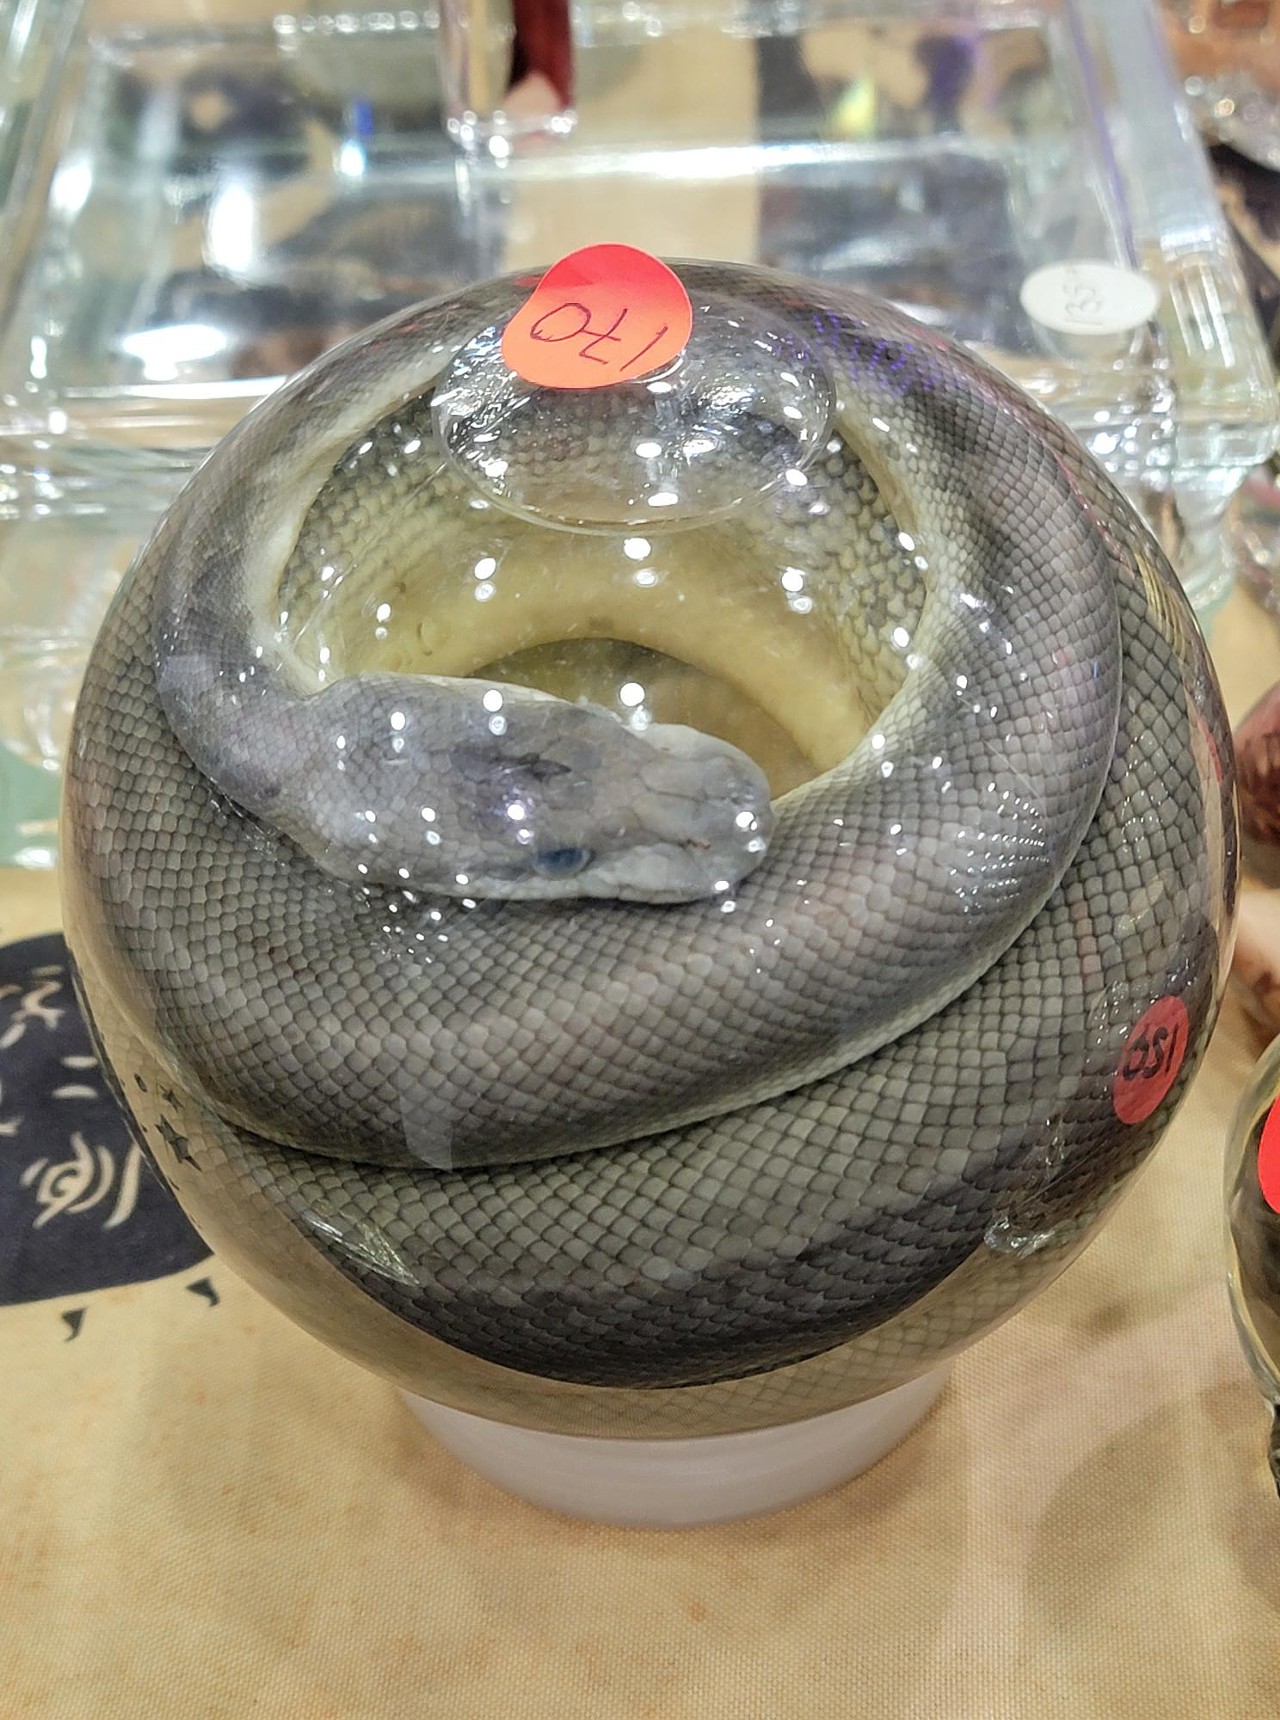 preserved snake in globe